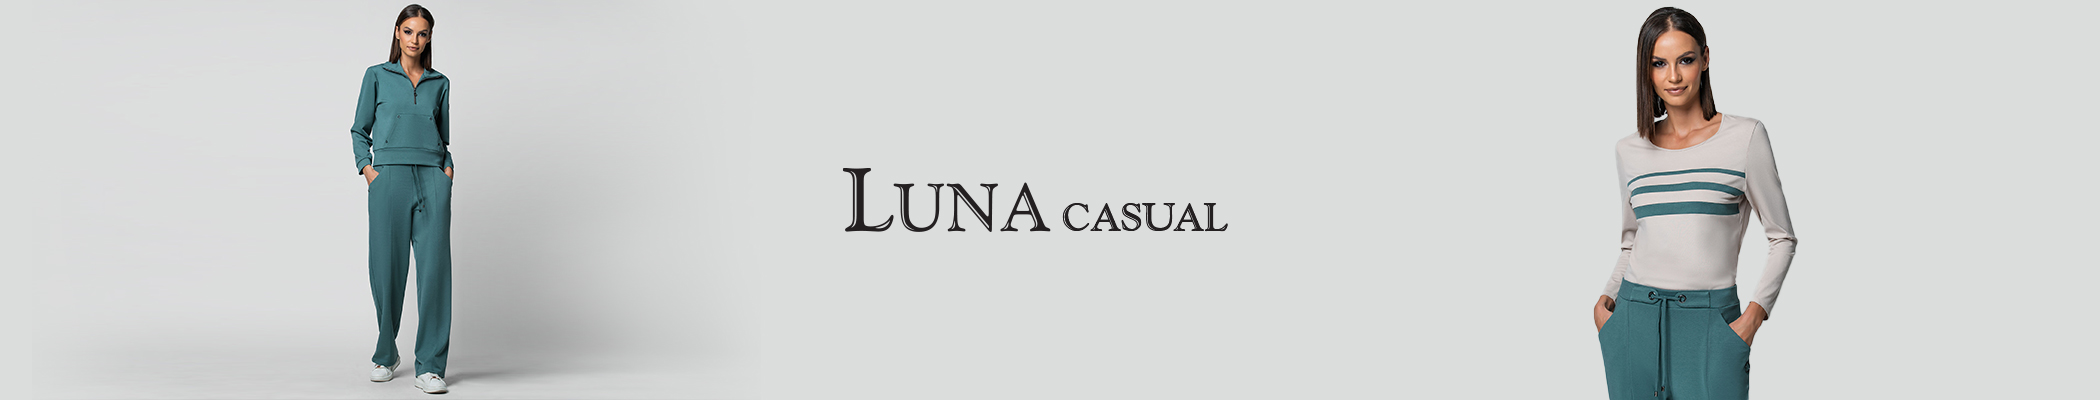 Luna Casual